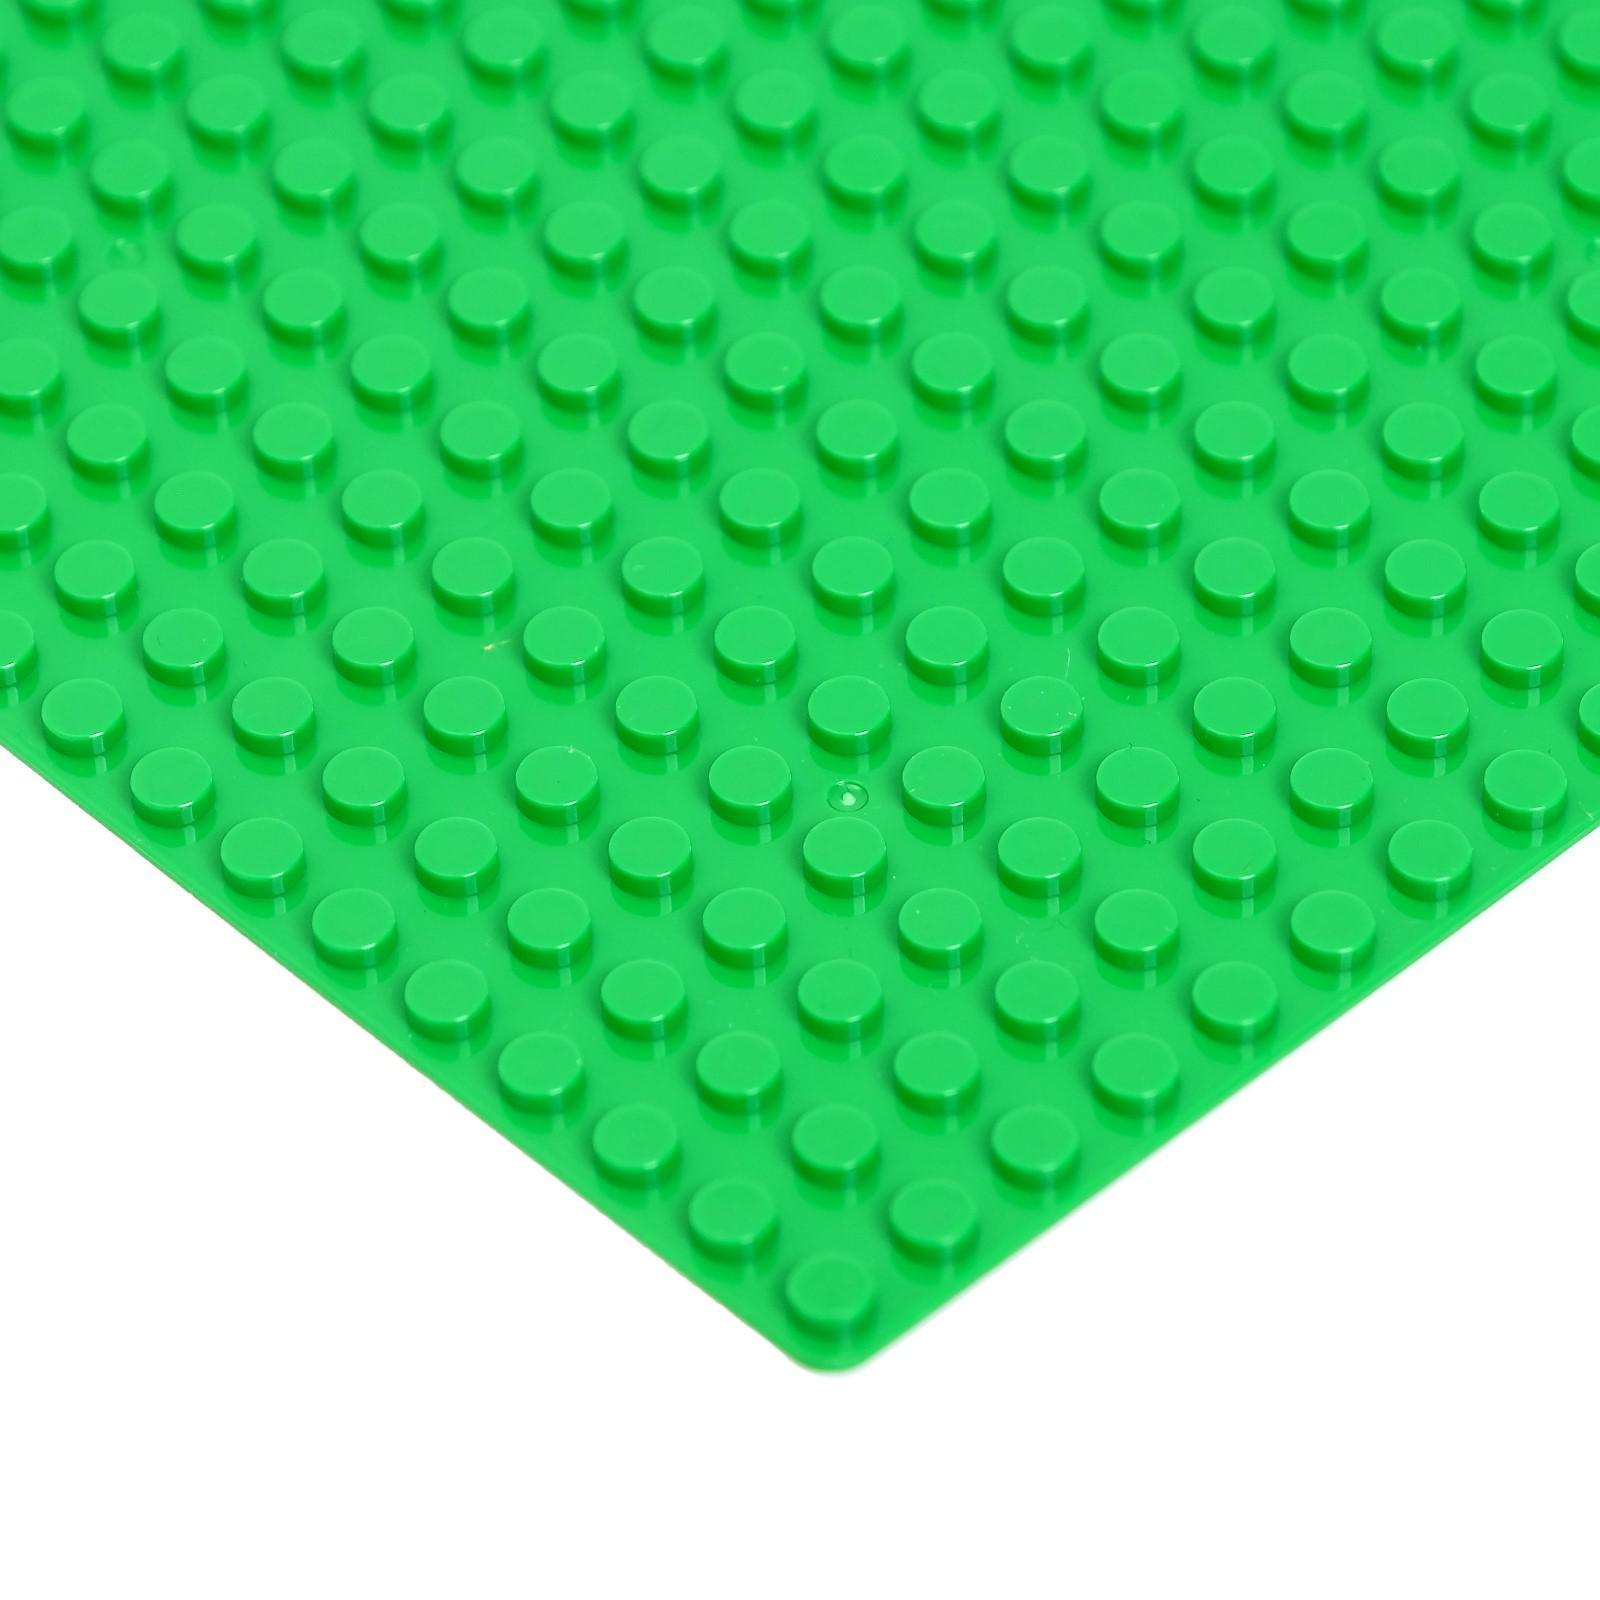 Строительная пластина-основание для конструктора ЛЕГО 25,5x25,5 см. 90004A / Зеленый